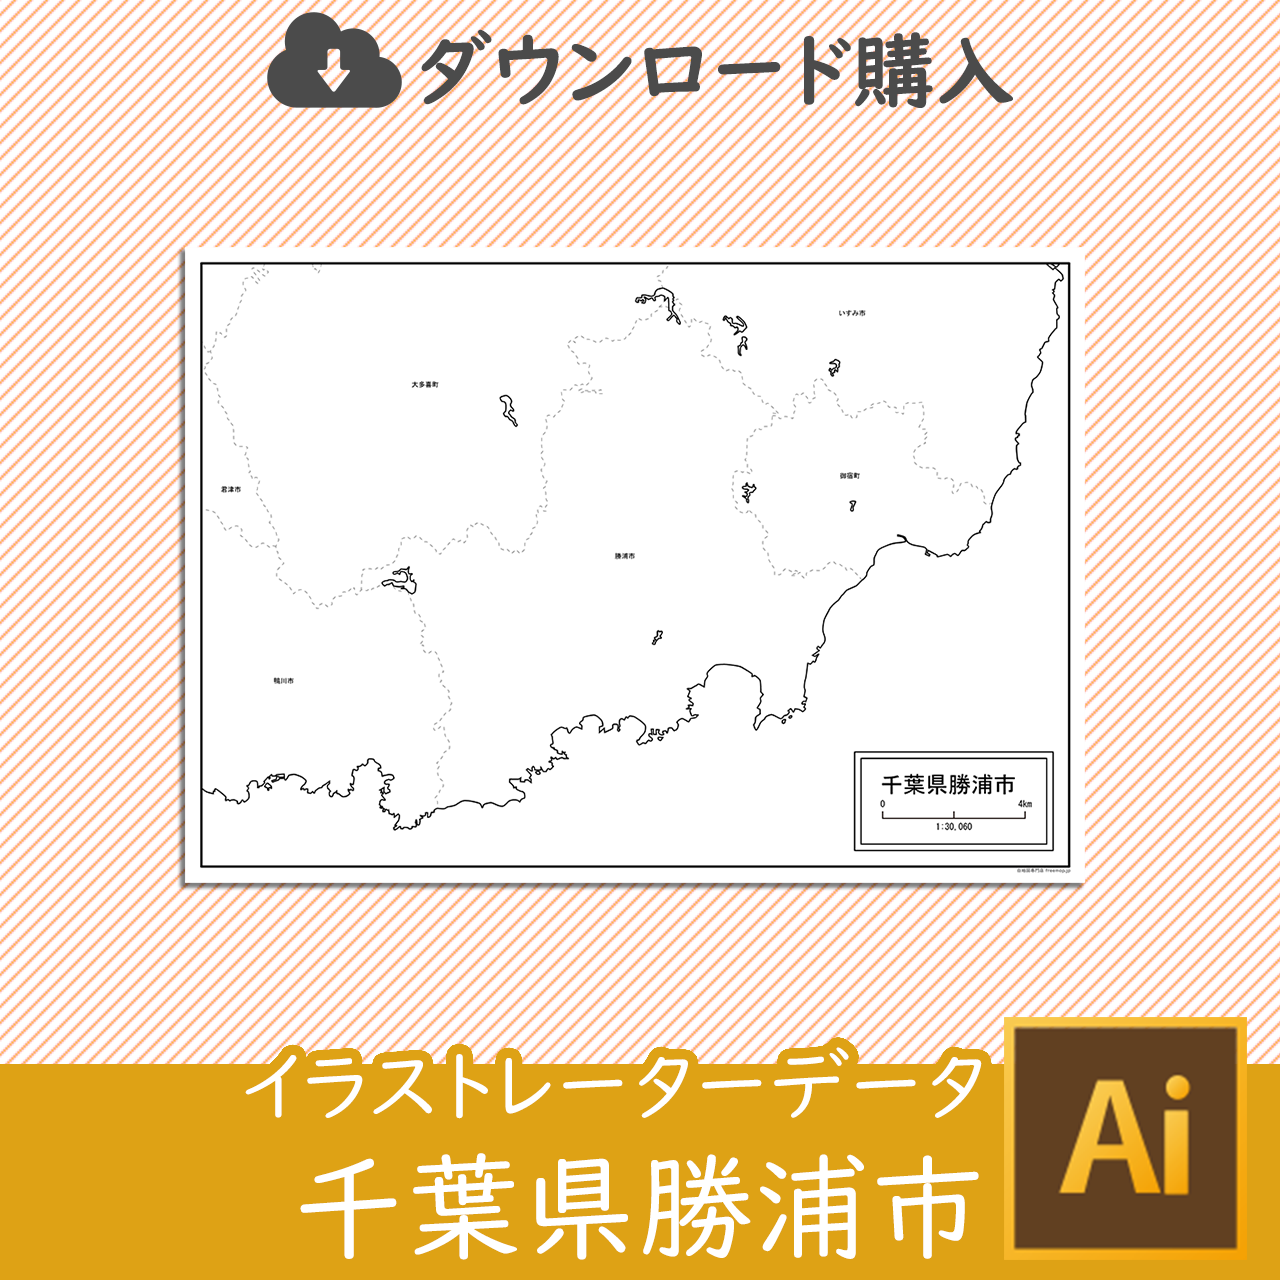 勝浦市のaiデータのサムネイル画像